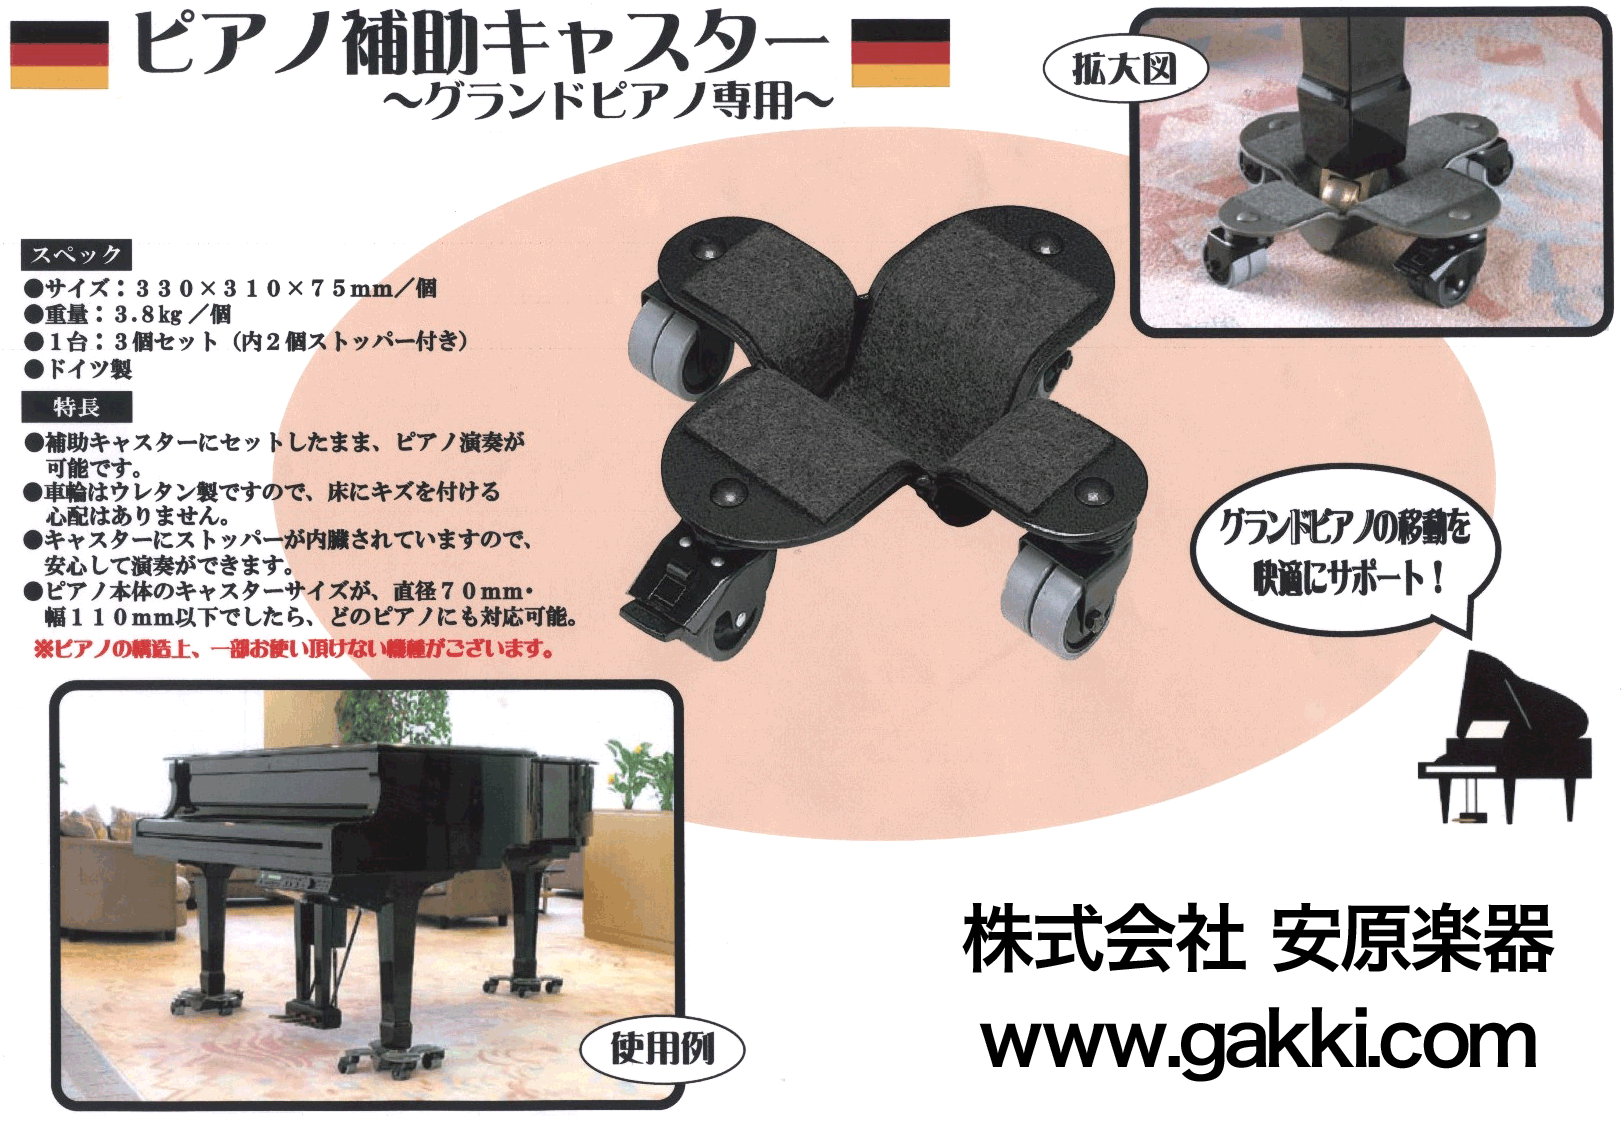 グランドピアノ 補助キャスター (日本製) 3個1セット-